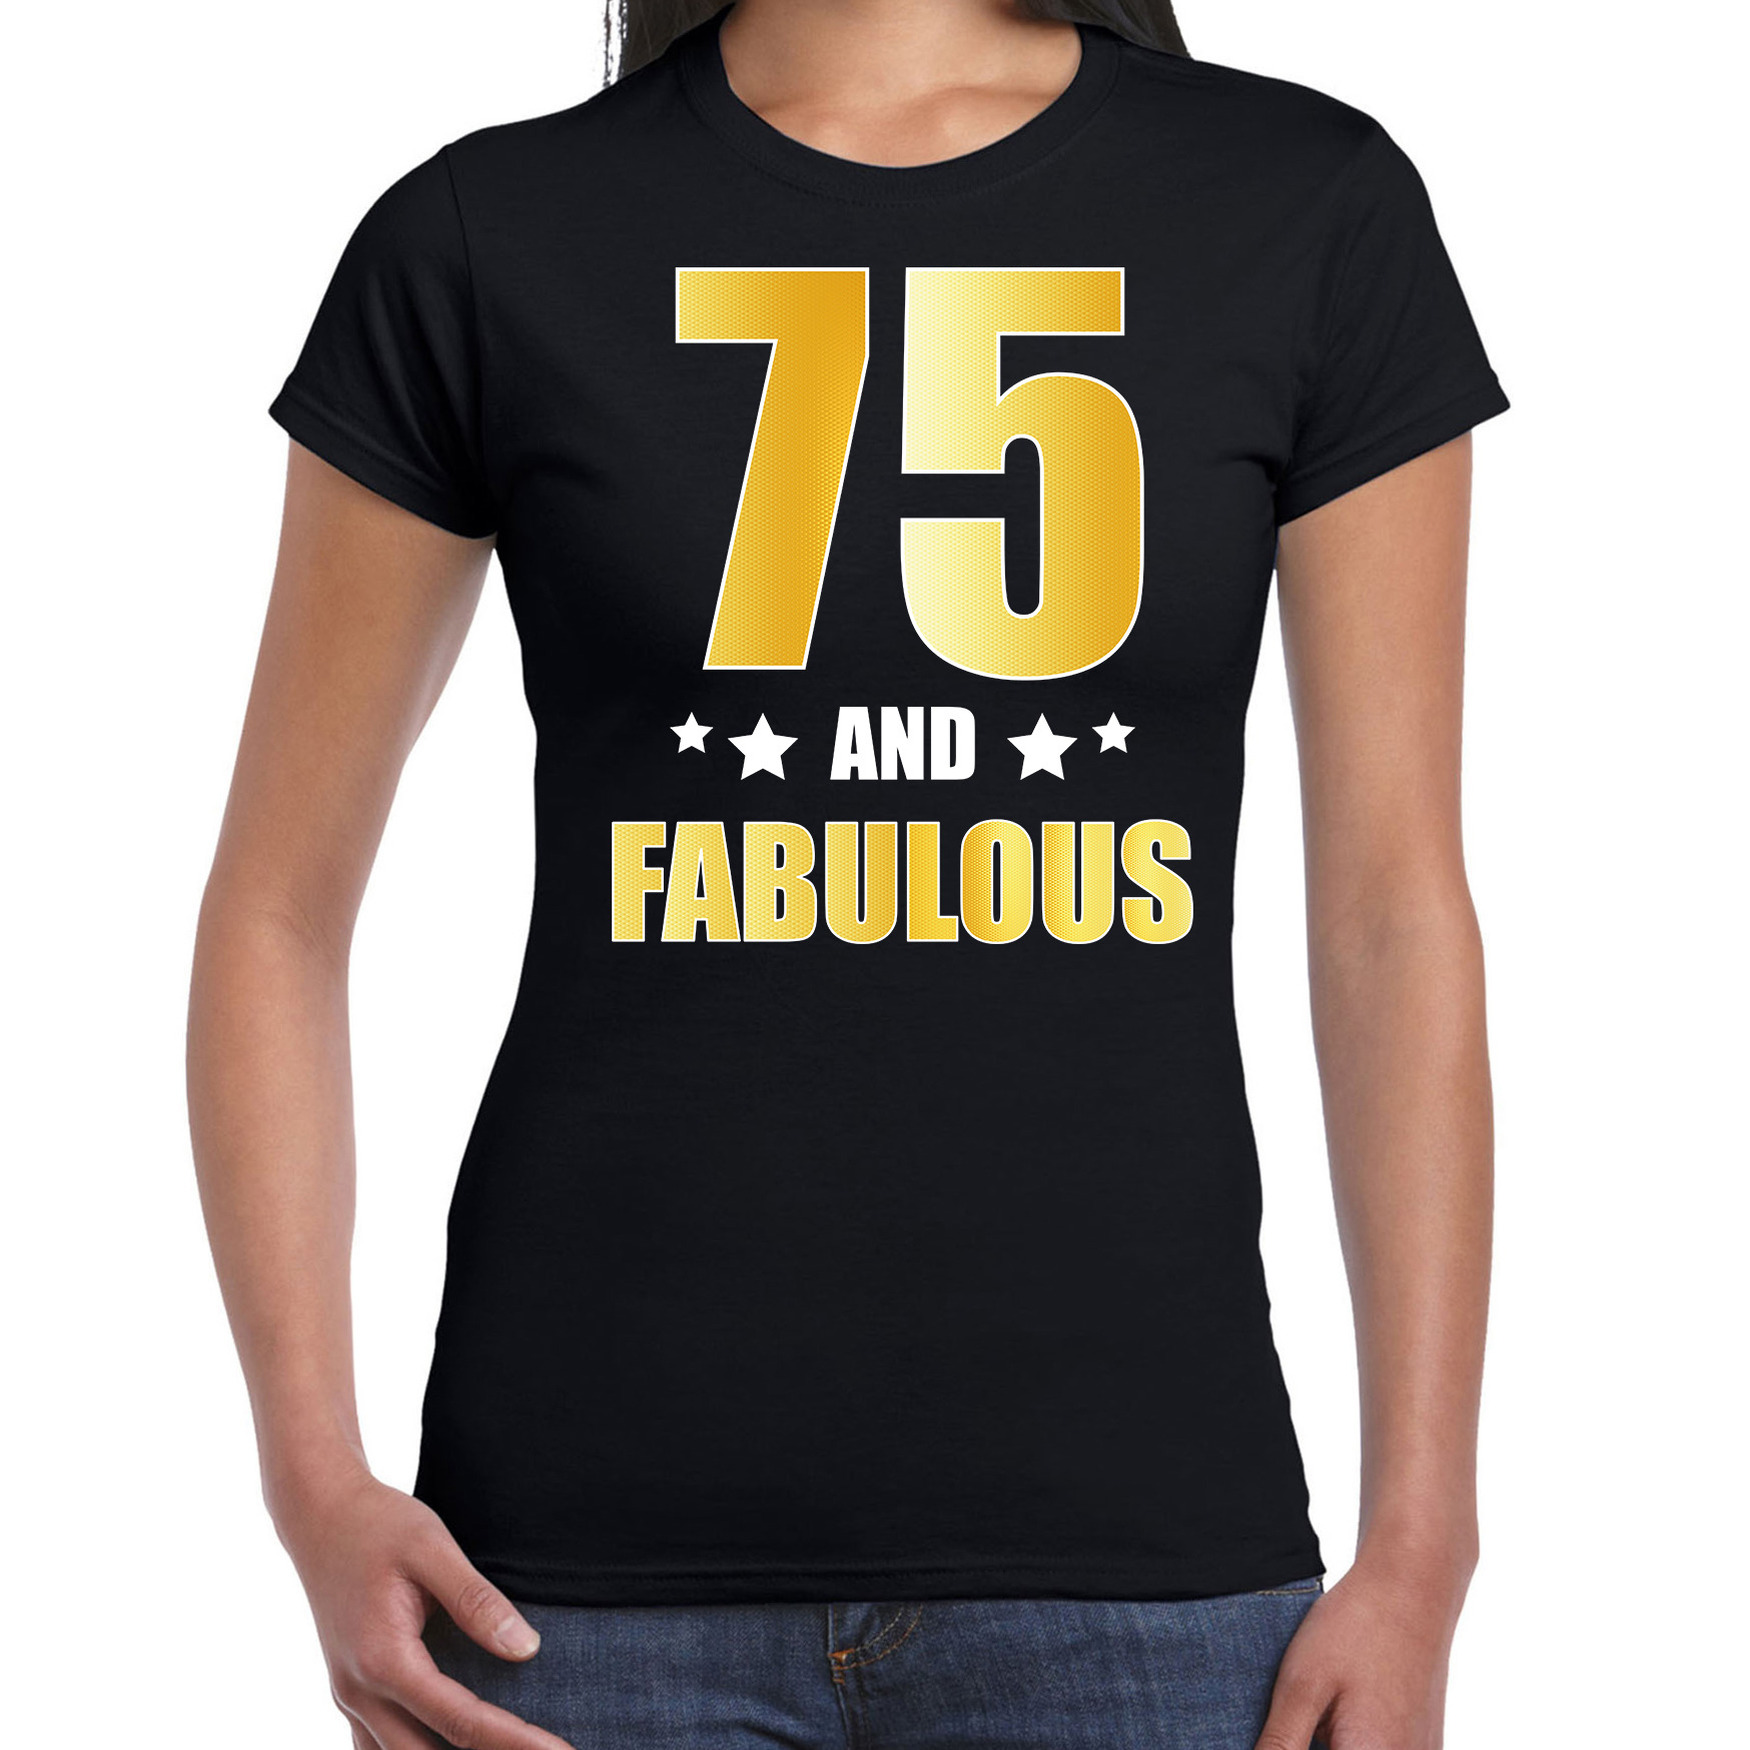 75 and fabulous verjaardag cadeau t-shirt / shirt goud 75 jaar zwart voor dames